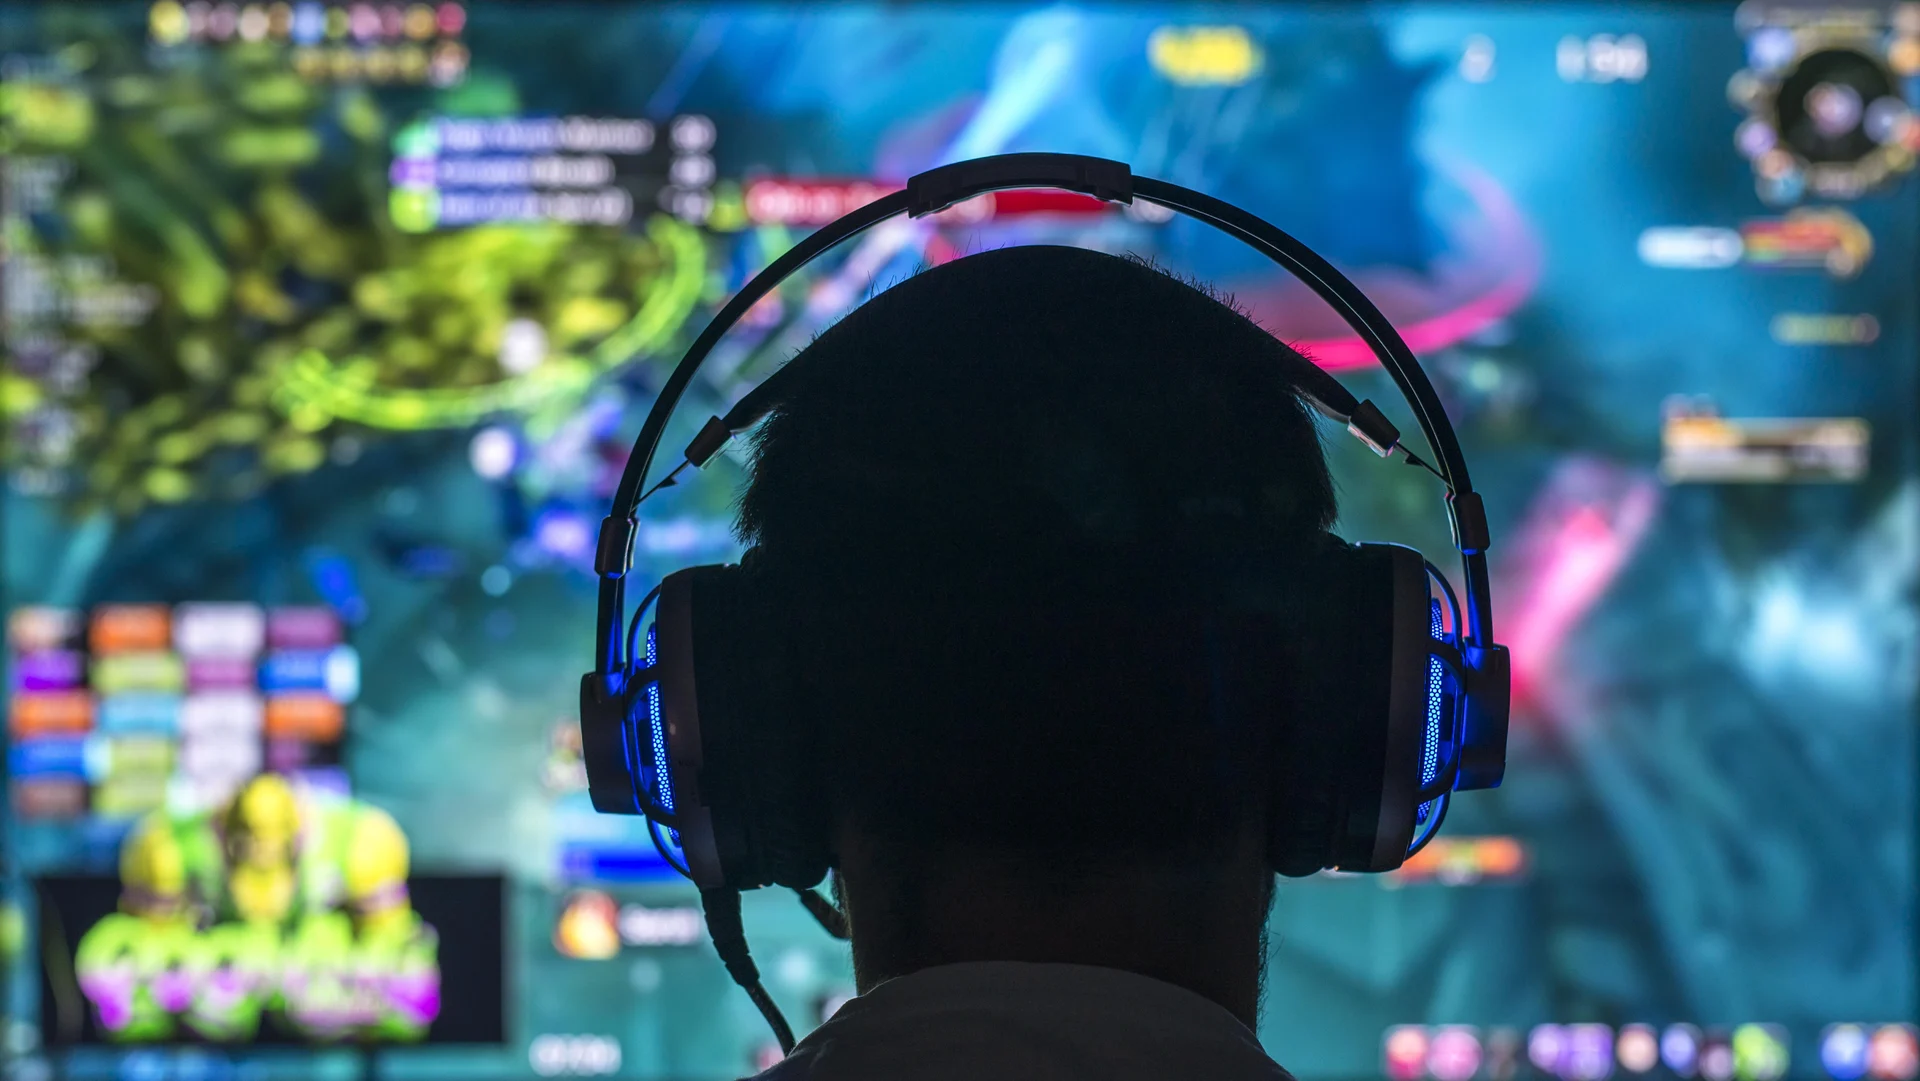 Jugar Videojuegos Ruidosos Pone a los Usuarios en Riesgo de Pérdida de Audición, Tinnitus